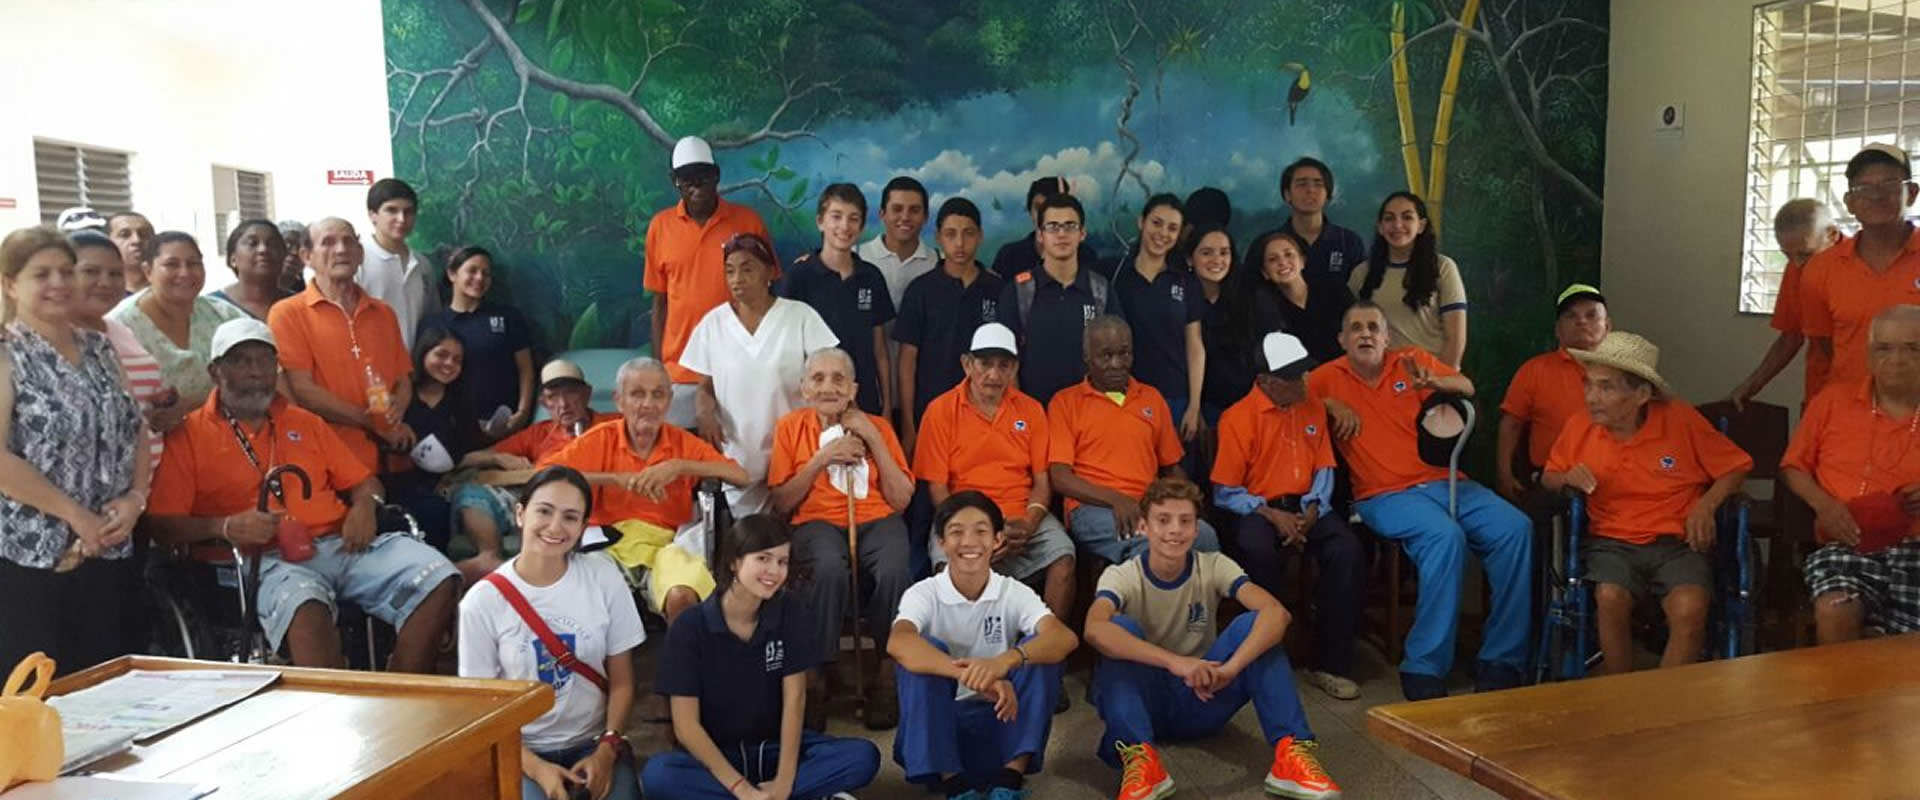 Jornada de trabajo social de estudiantes del Colegio de Panamá en visita compartida con los residentes del Hogar de Paraíso